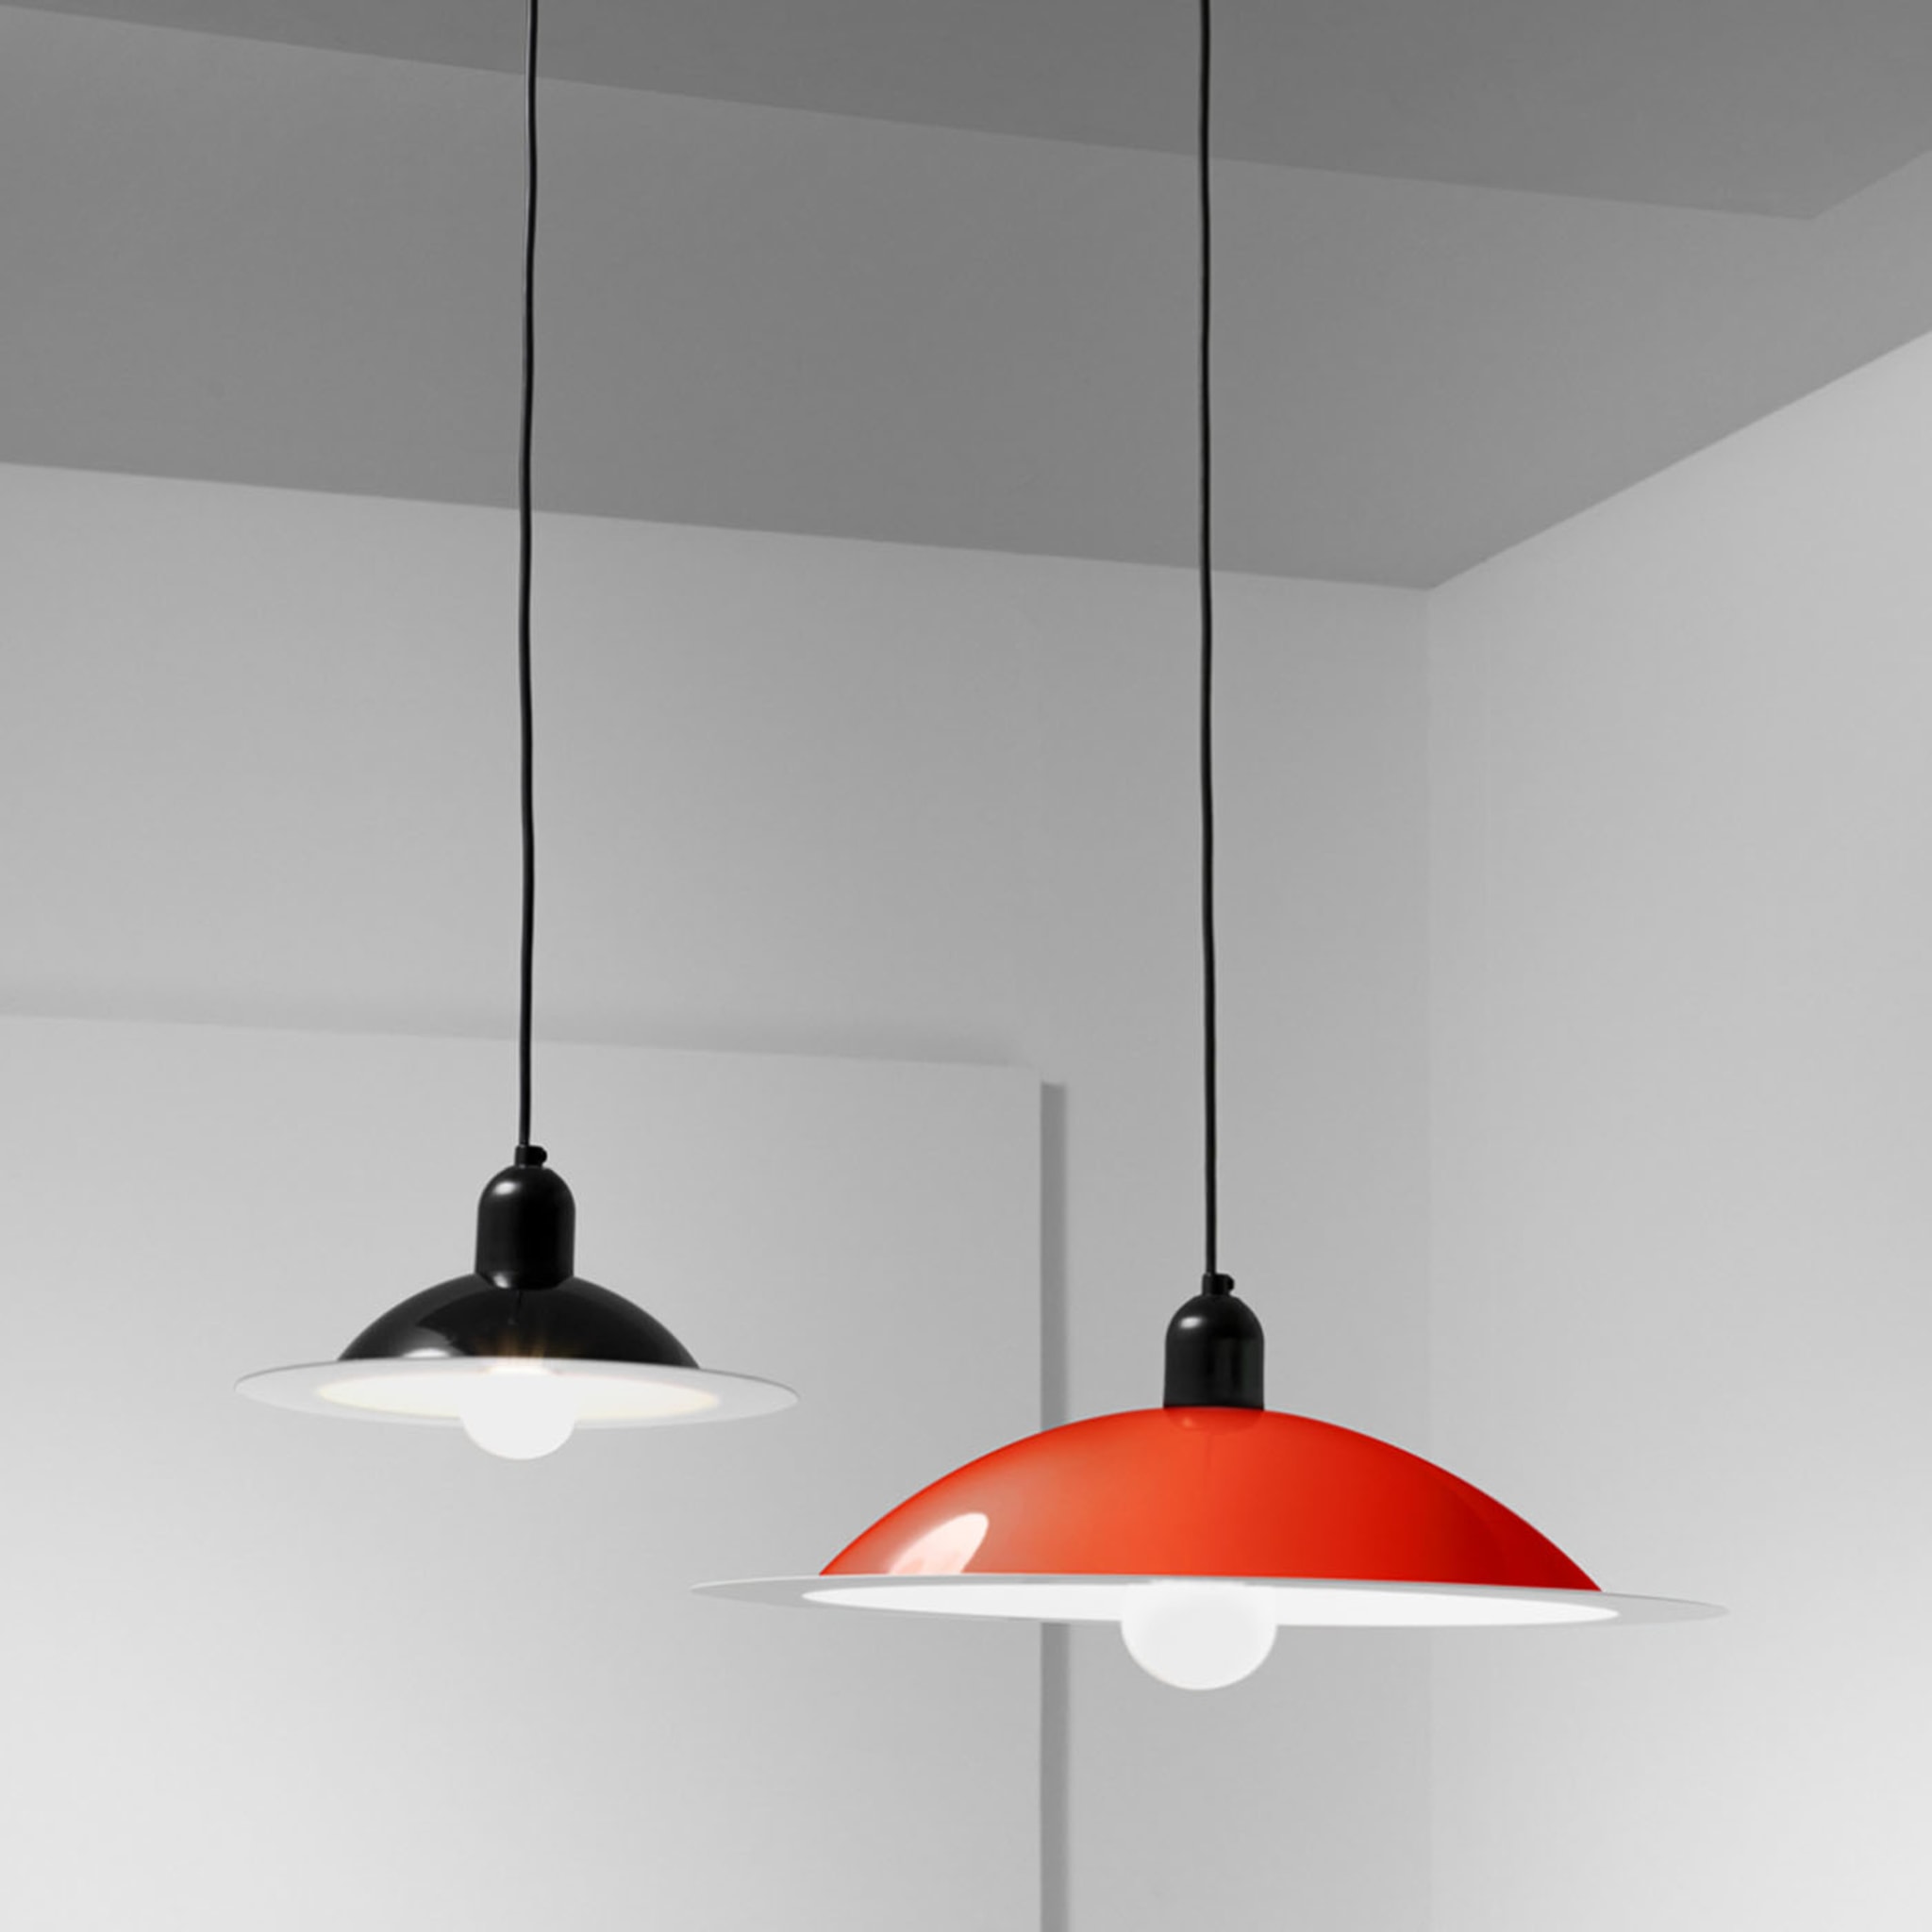 Lampiatta Petite lampe suspendue rouge - Vue alternative 1